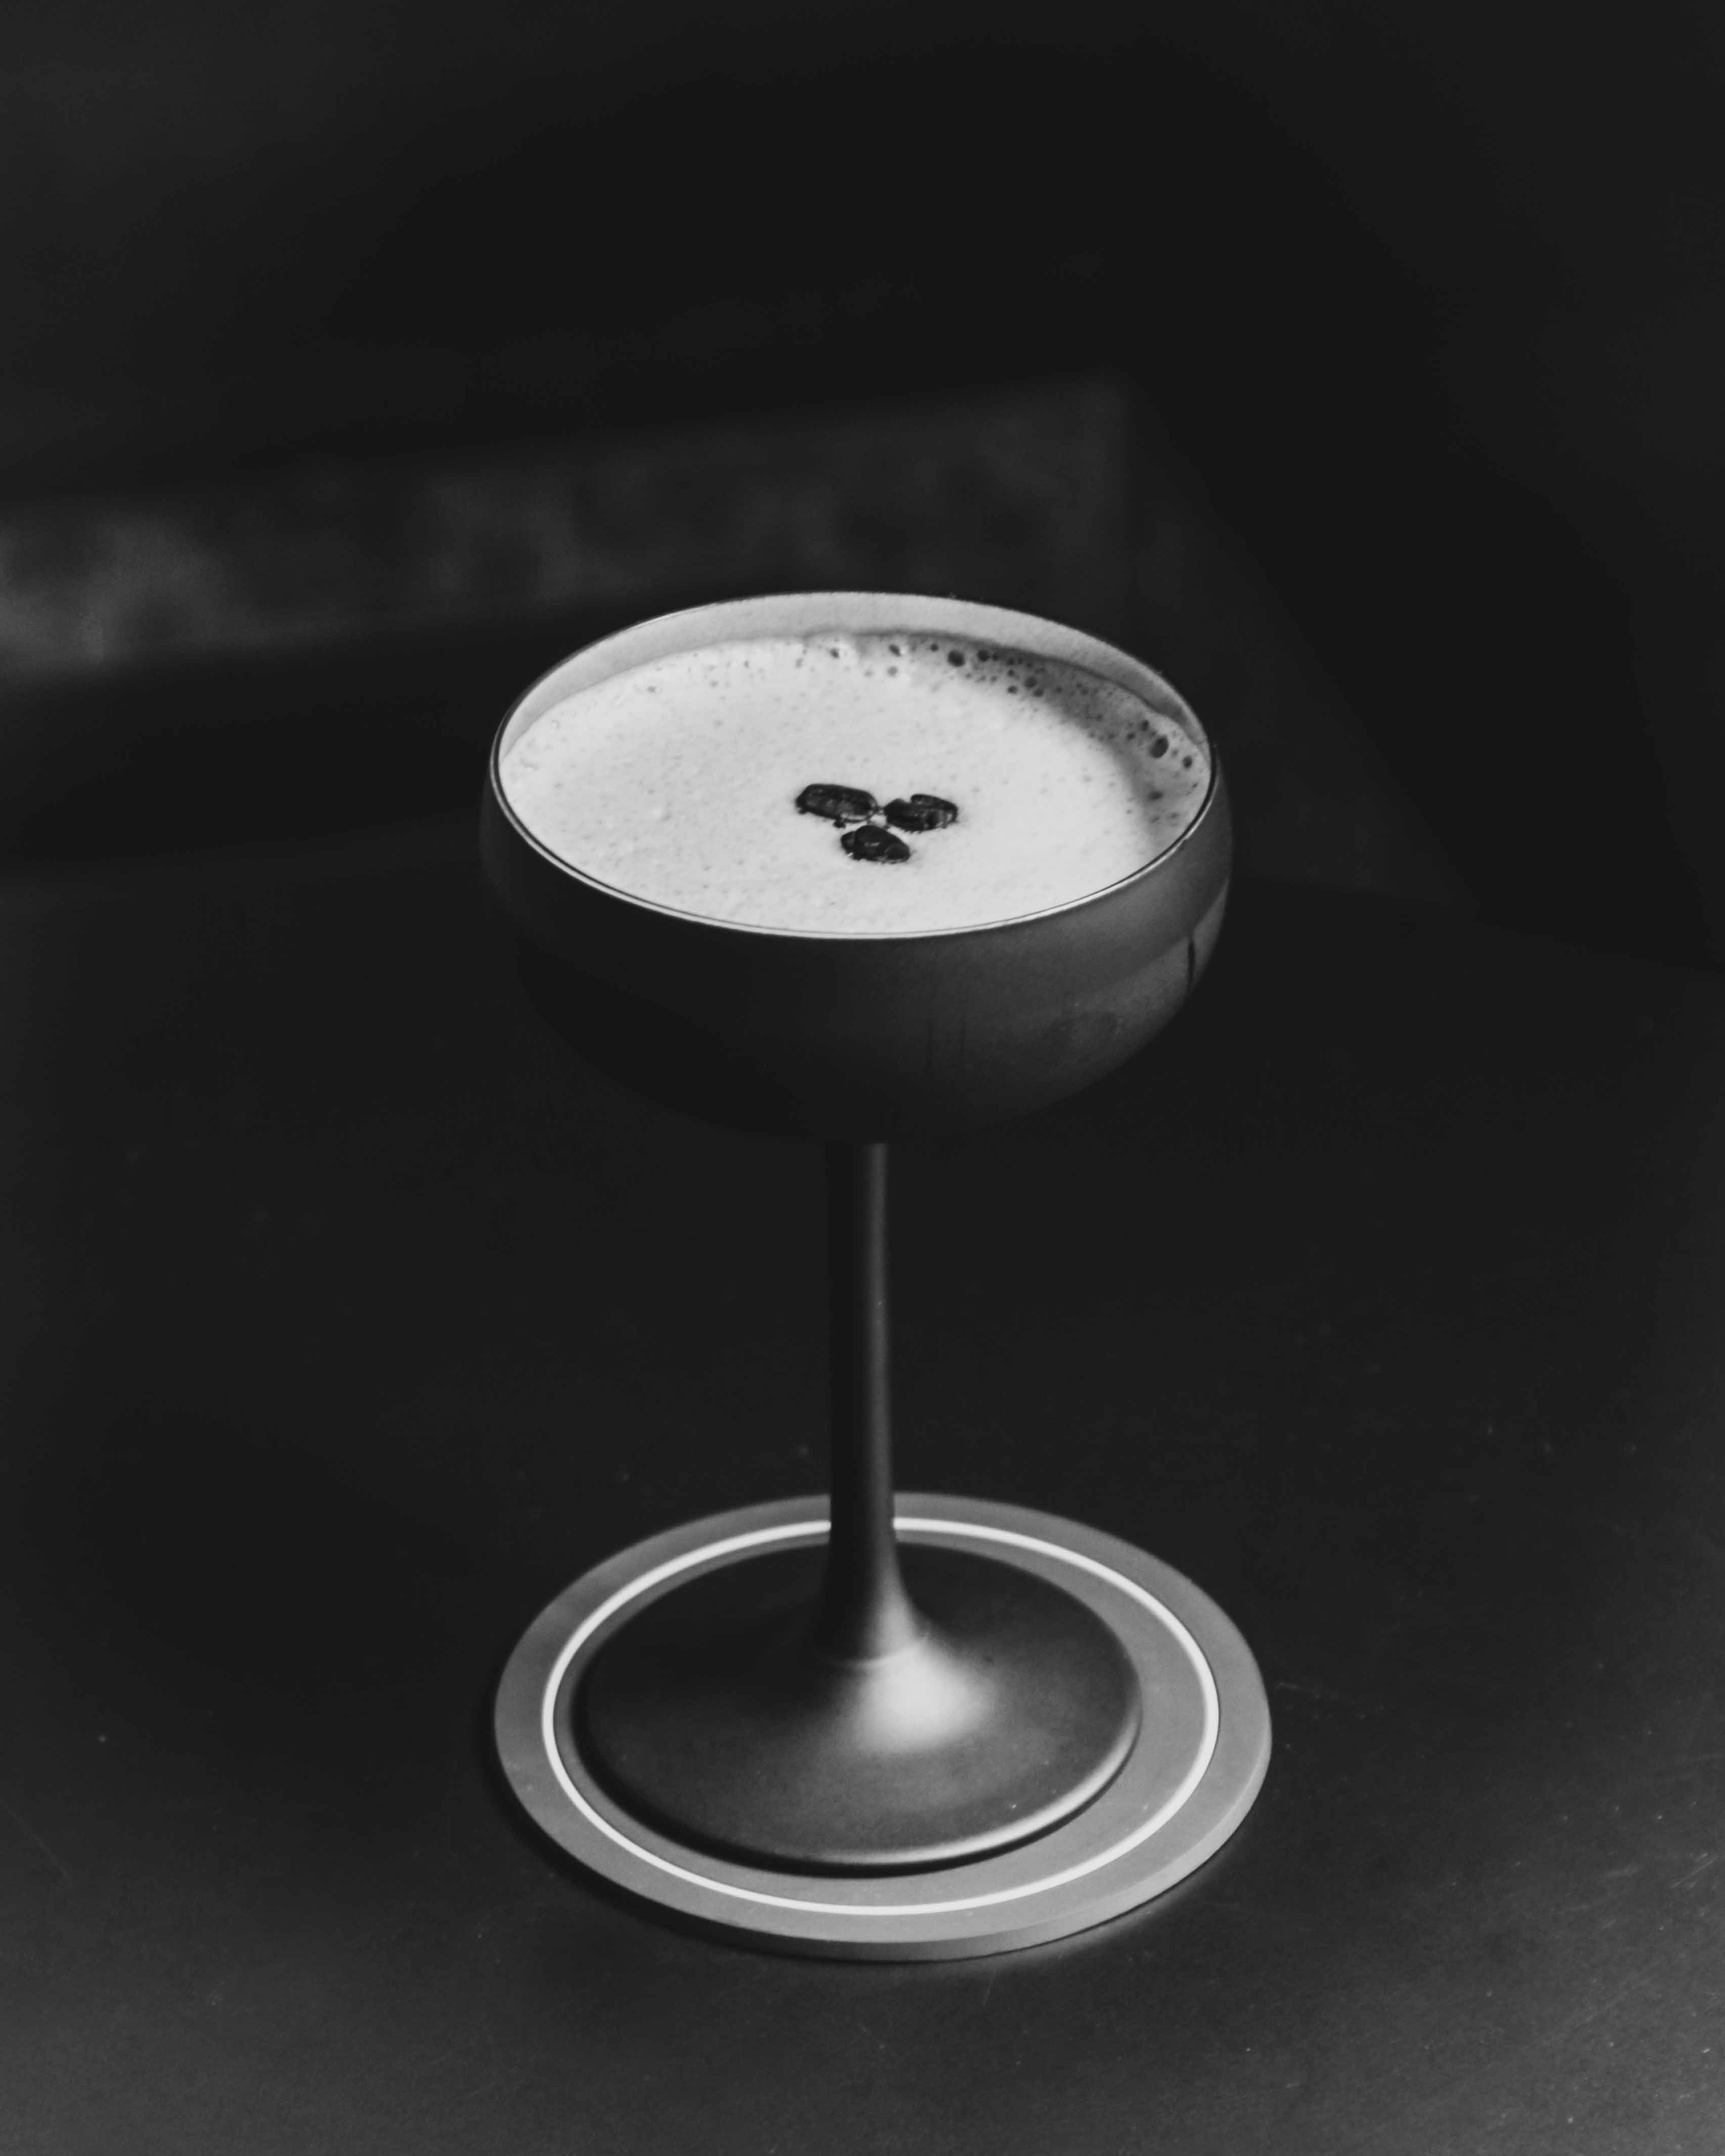 A brief history of the Espresso Martini